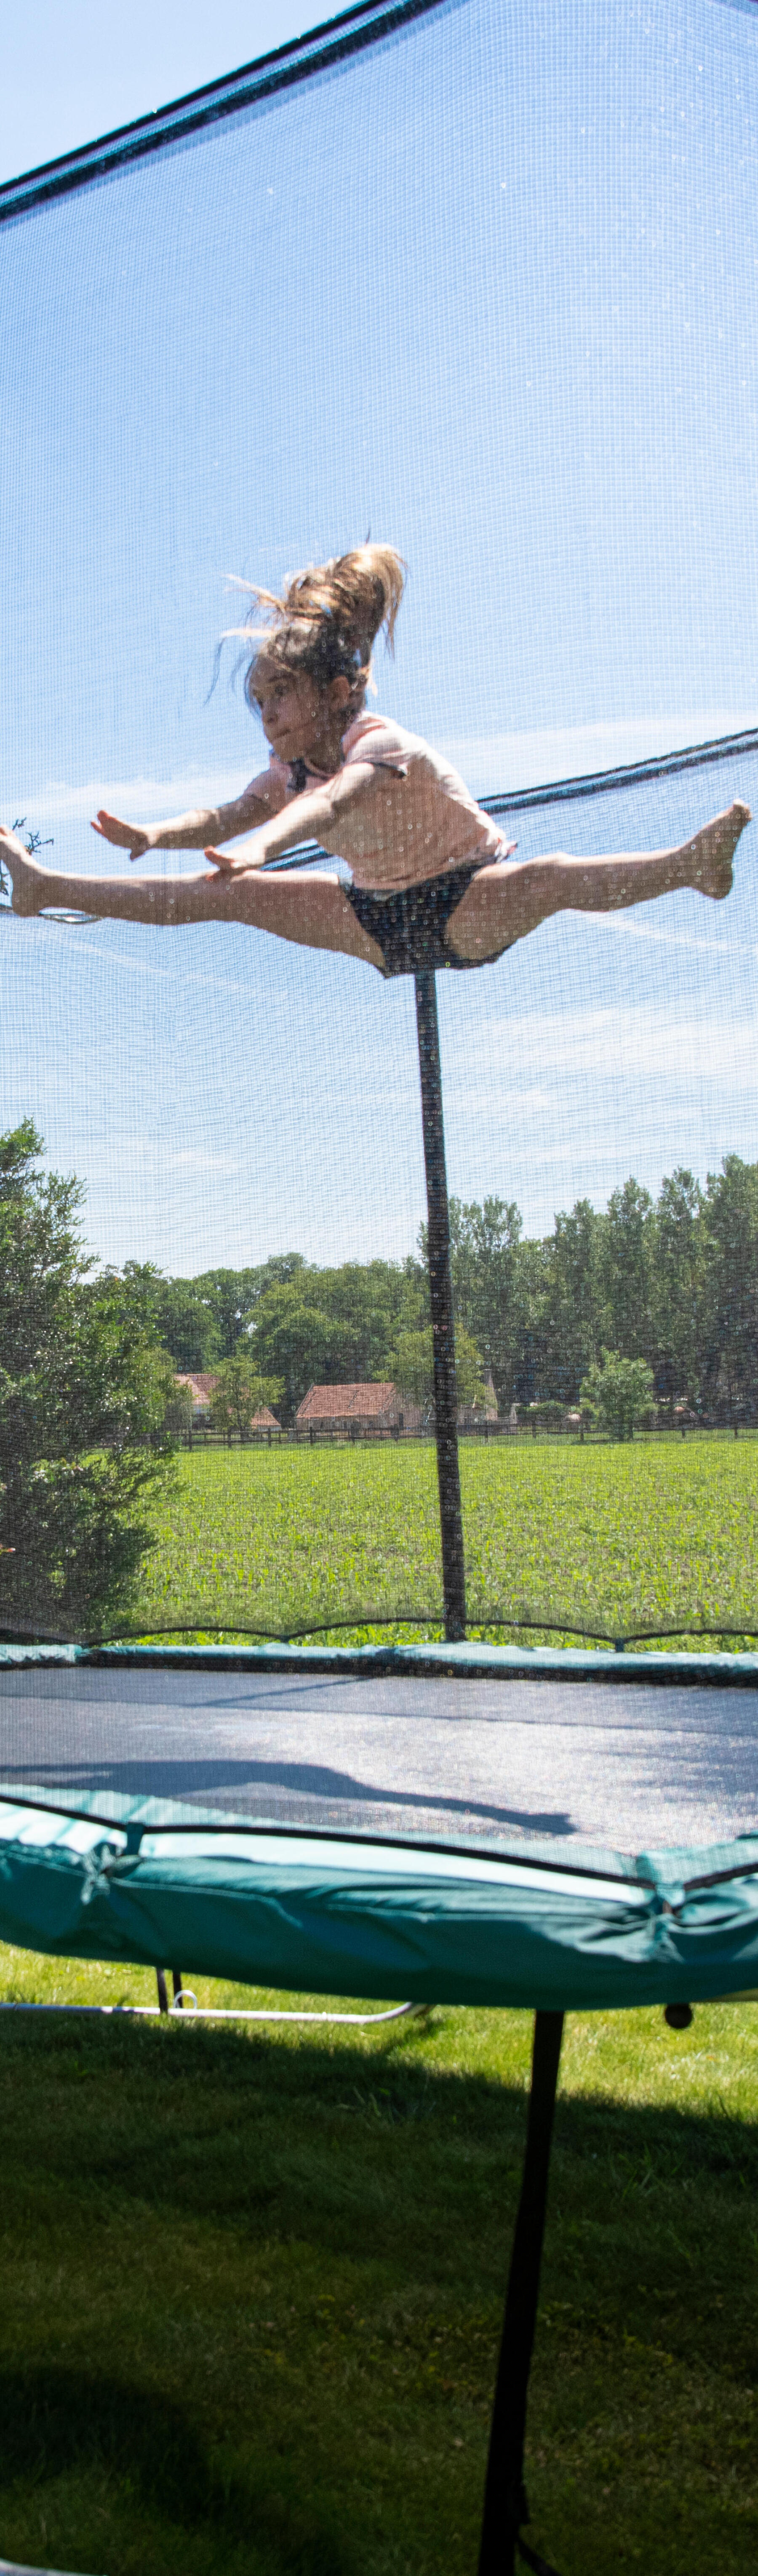 3 idées de jeu pour pratiquer le trampoline en toute sécurité 